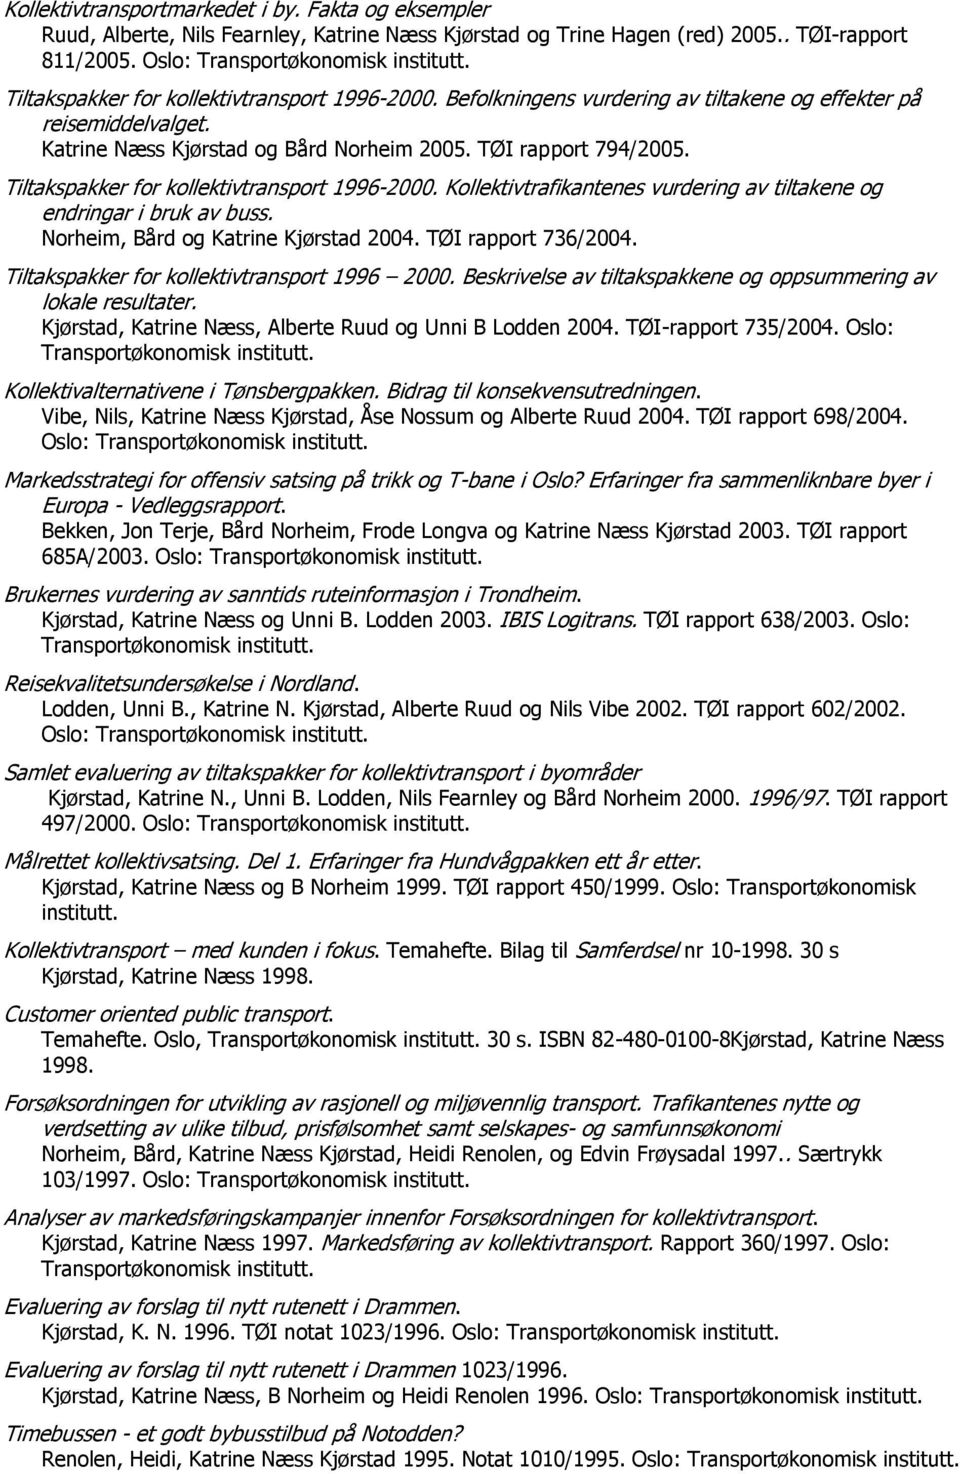 Tiltakspakker for kollektivtransport 1996-2000. Kollektivtrafikantenes vurdering av tiltakene og endringar i bruk av buss. Norheim, Bård og Katrine Kjørstad 2004. TØI rapport 736/2004.